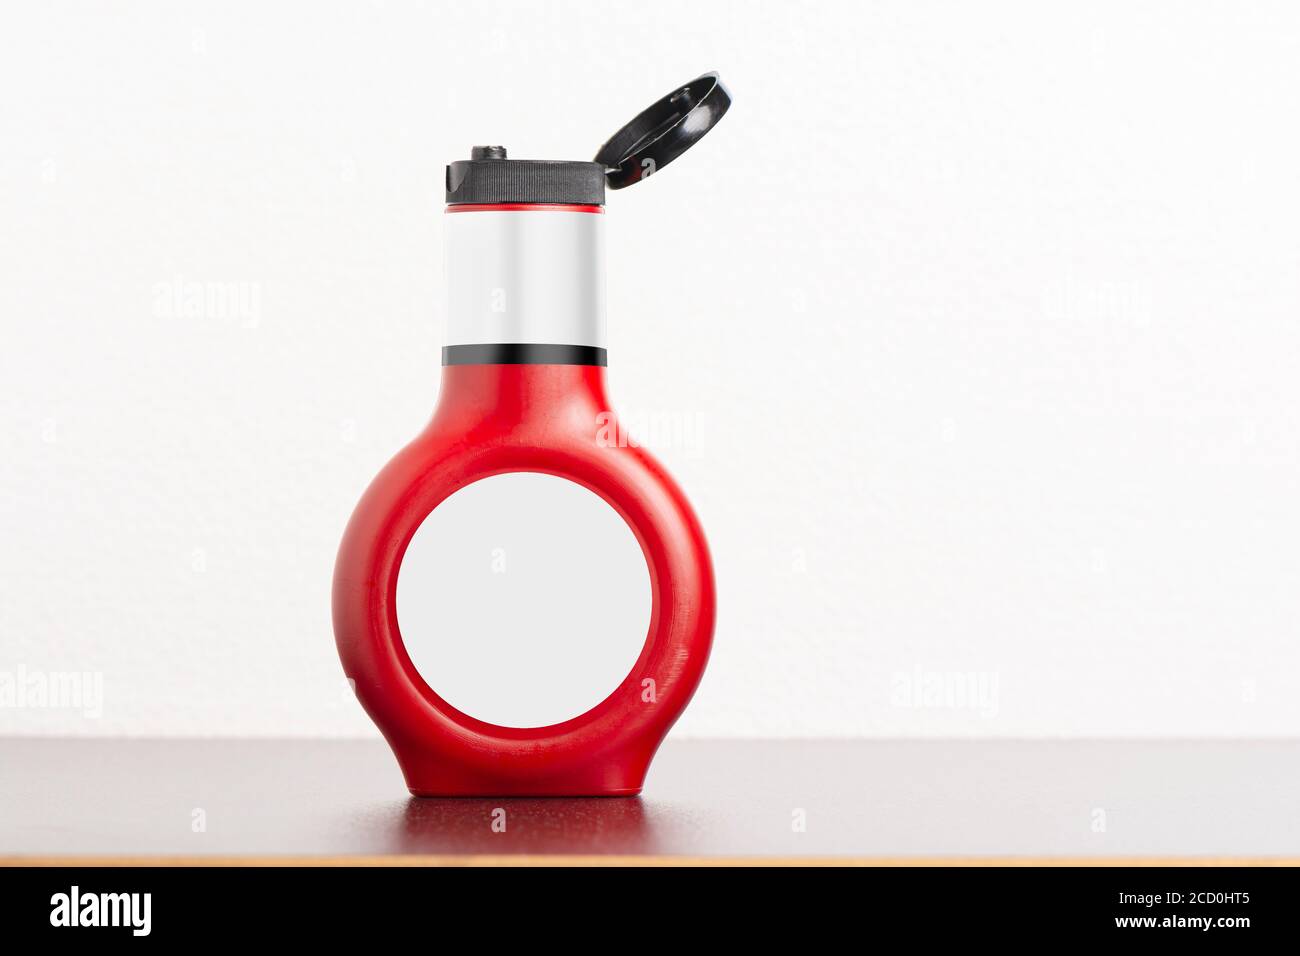 Tomatensauce Flasche mit Kappe auf schwarzem Tisch, bearbeitbare Modell-up-Serie Vorlage bereit für Ihr Design, Auswahl Pfad enthalten. Stockfoto